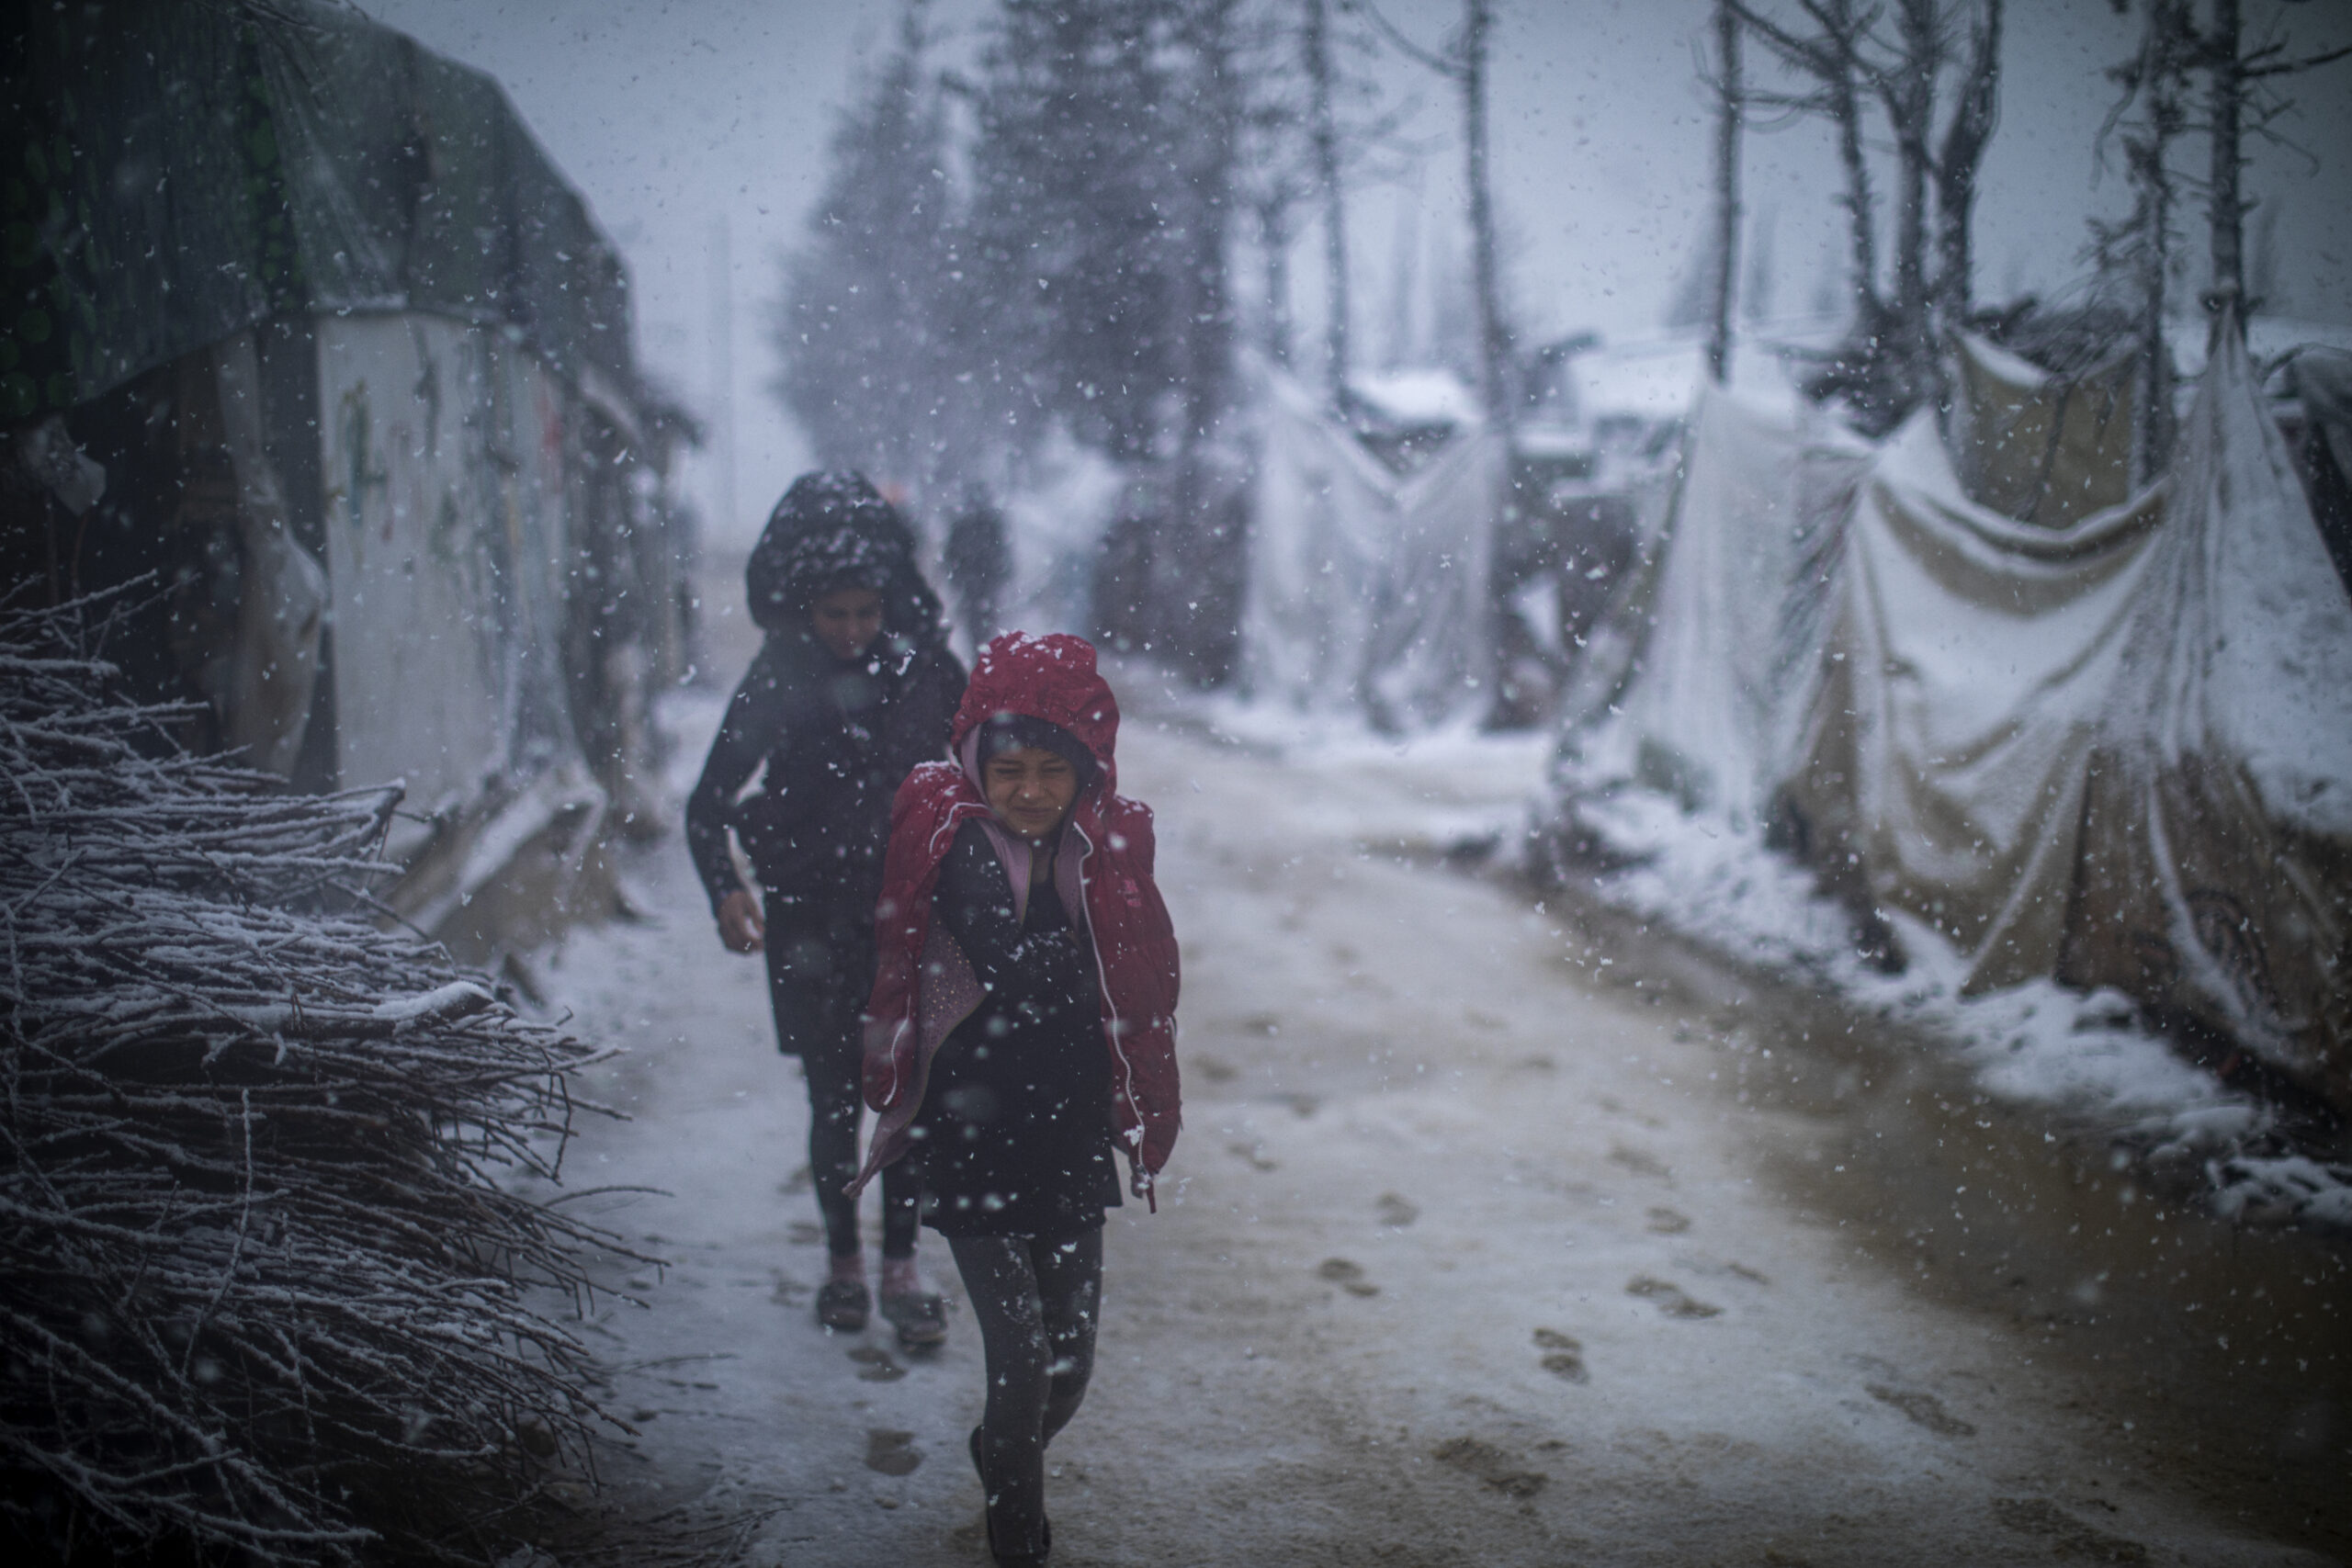 Jonge Syrische vluchtelingen lopen tijdens een zware storm door de sneeuw naar huis. In het informele vluchtelingekamp van de Bekavallei zijn de onderkomens niet geschikt om de barre wintermaanden te doorstaan. ©UNHCR/Diego Ibarra Sánchez